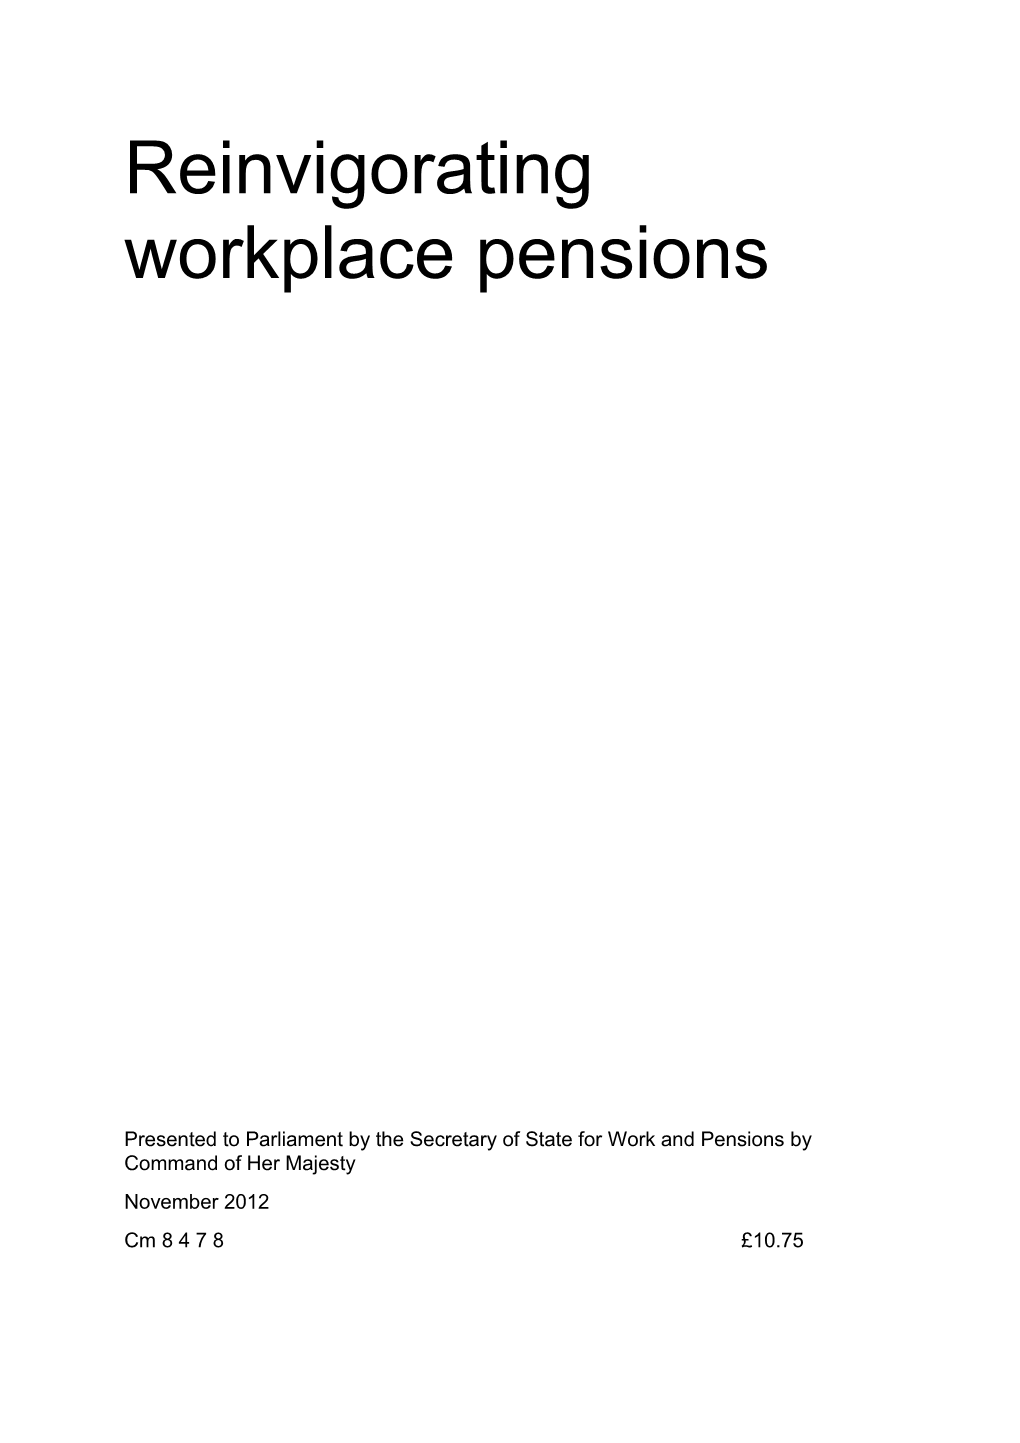 Reinvigorating Workplace Pensions